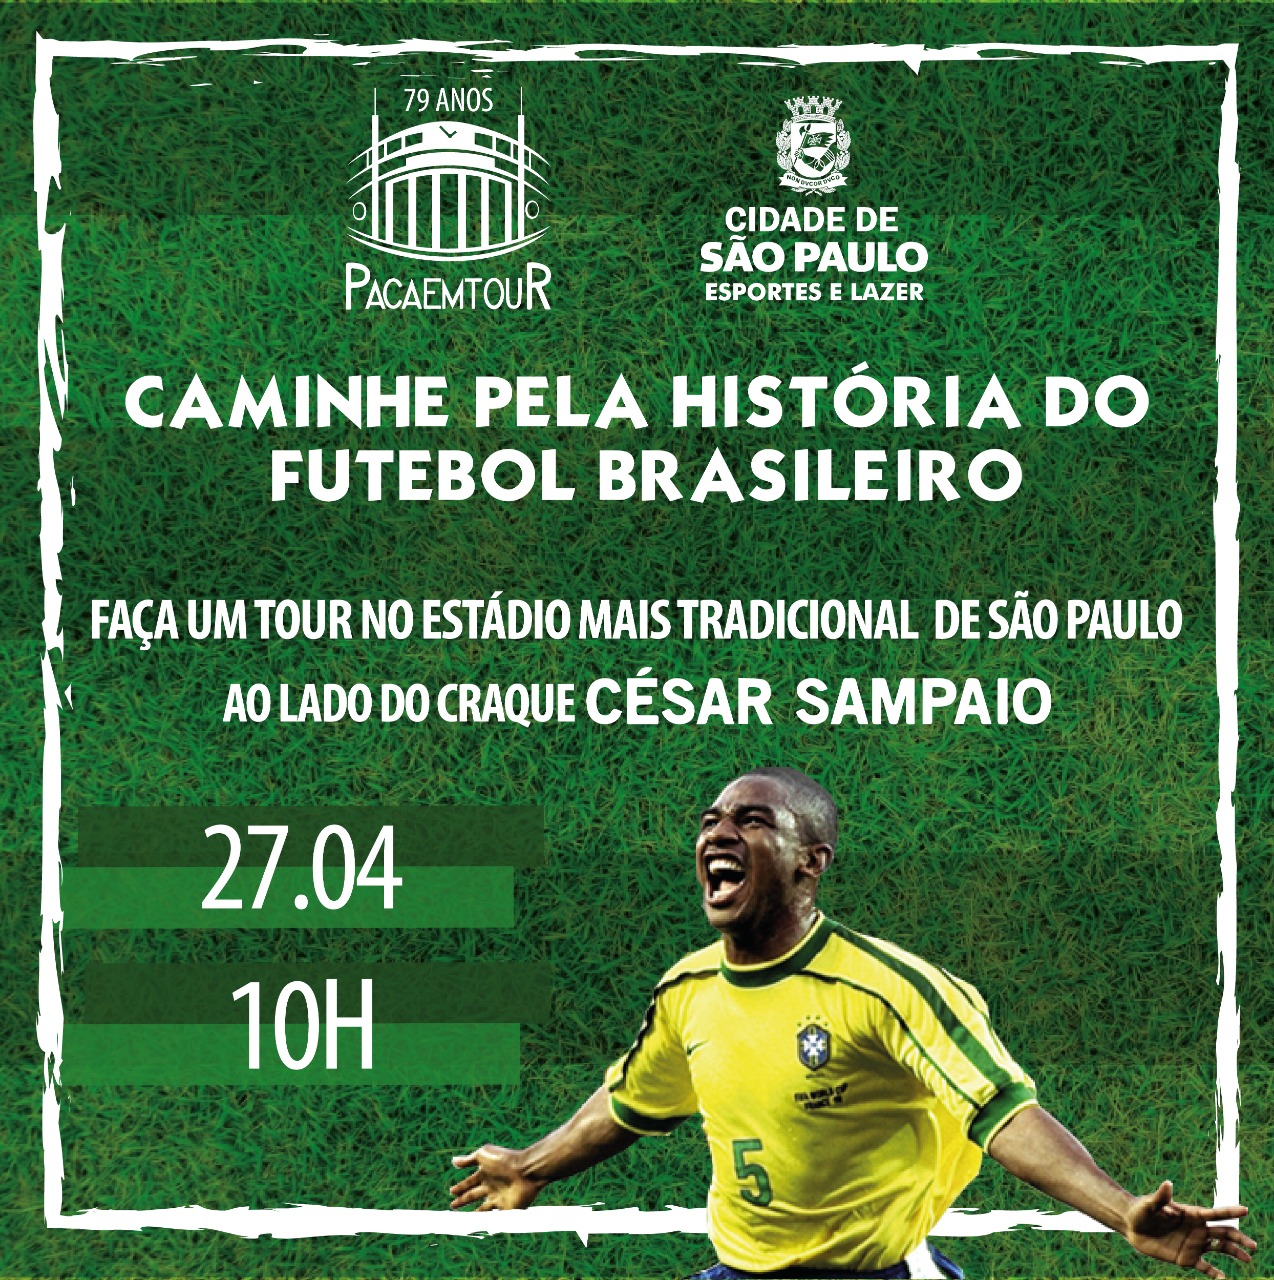 Arte com fundo que lembra um gramado de campo de futebol, com informações presentes no texto e uma foto do jogador César Sampaio comemorando gol